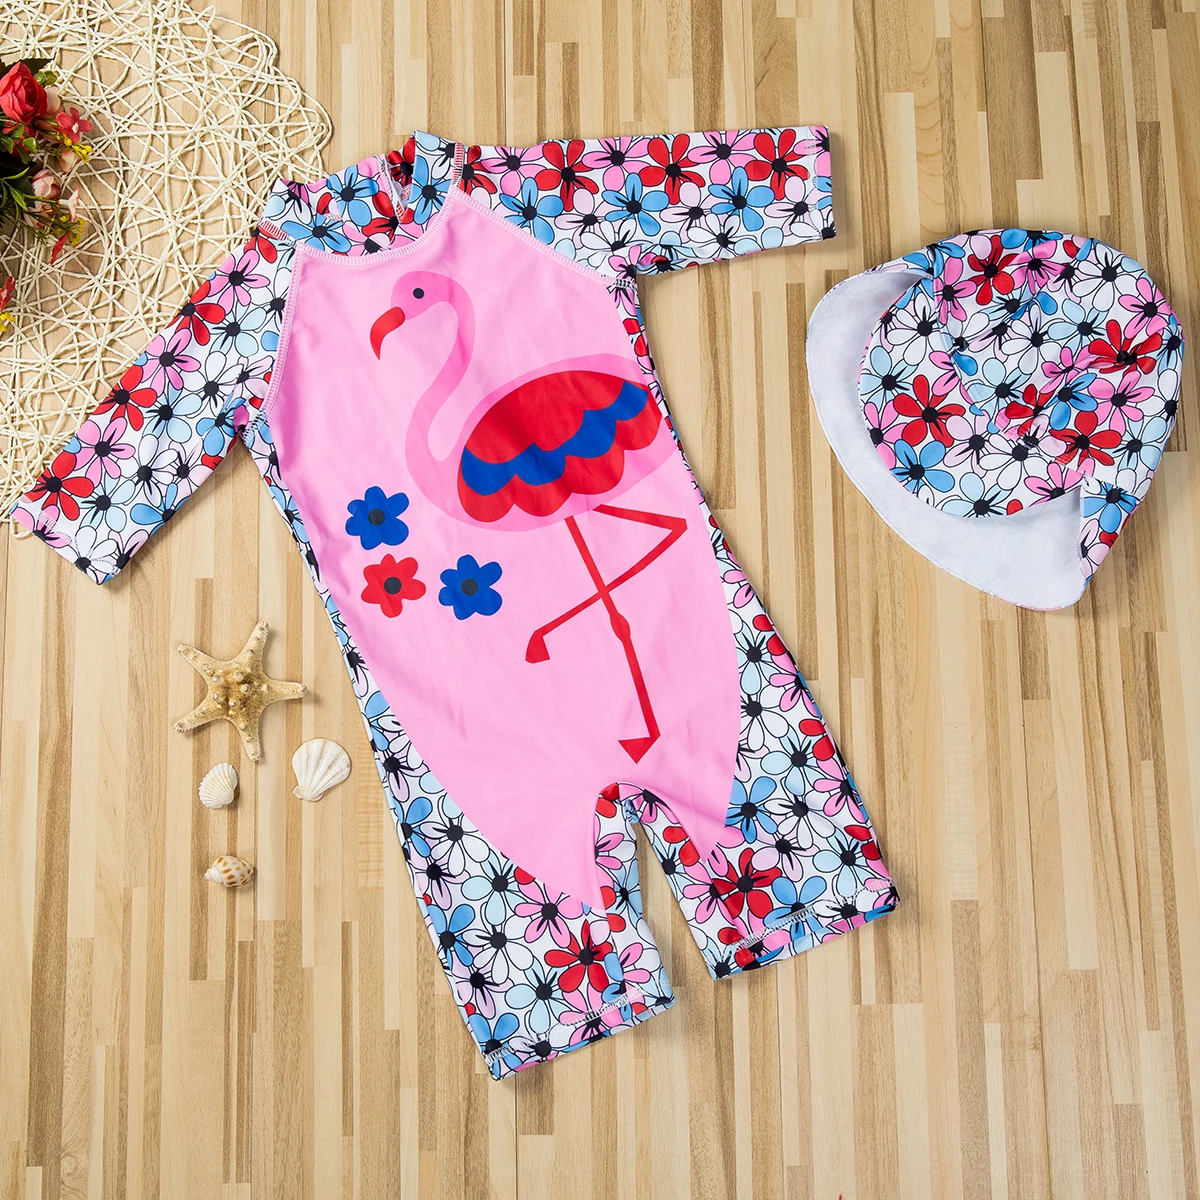 Детский купальный костюм года, купальные костюмы для маленьких девочек, купальный костюм розового цвета с принтом пламени и птицы для девочек, цельный купальный костюм, комплект детской шапочки